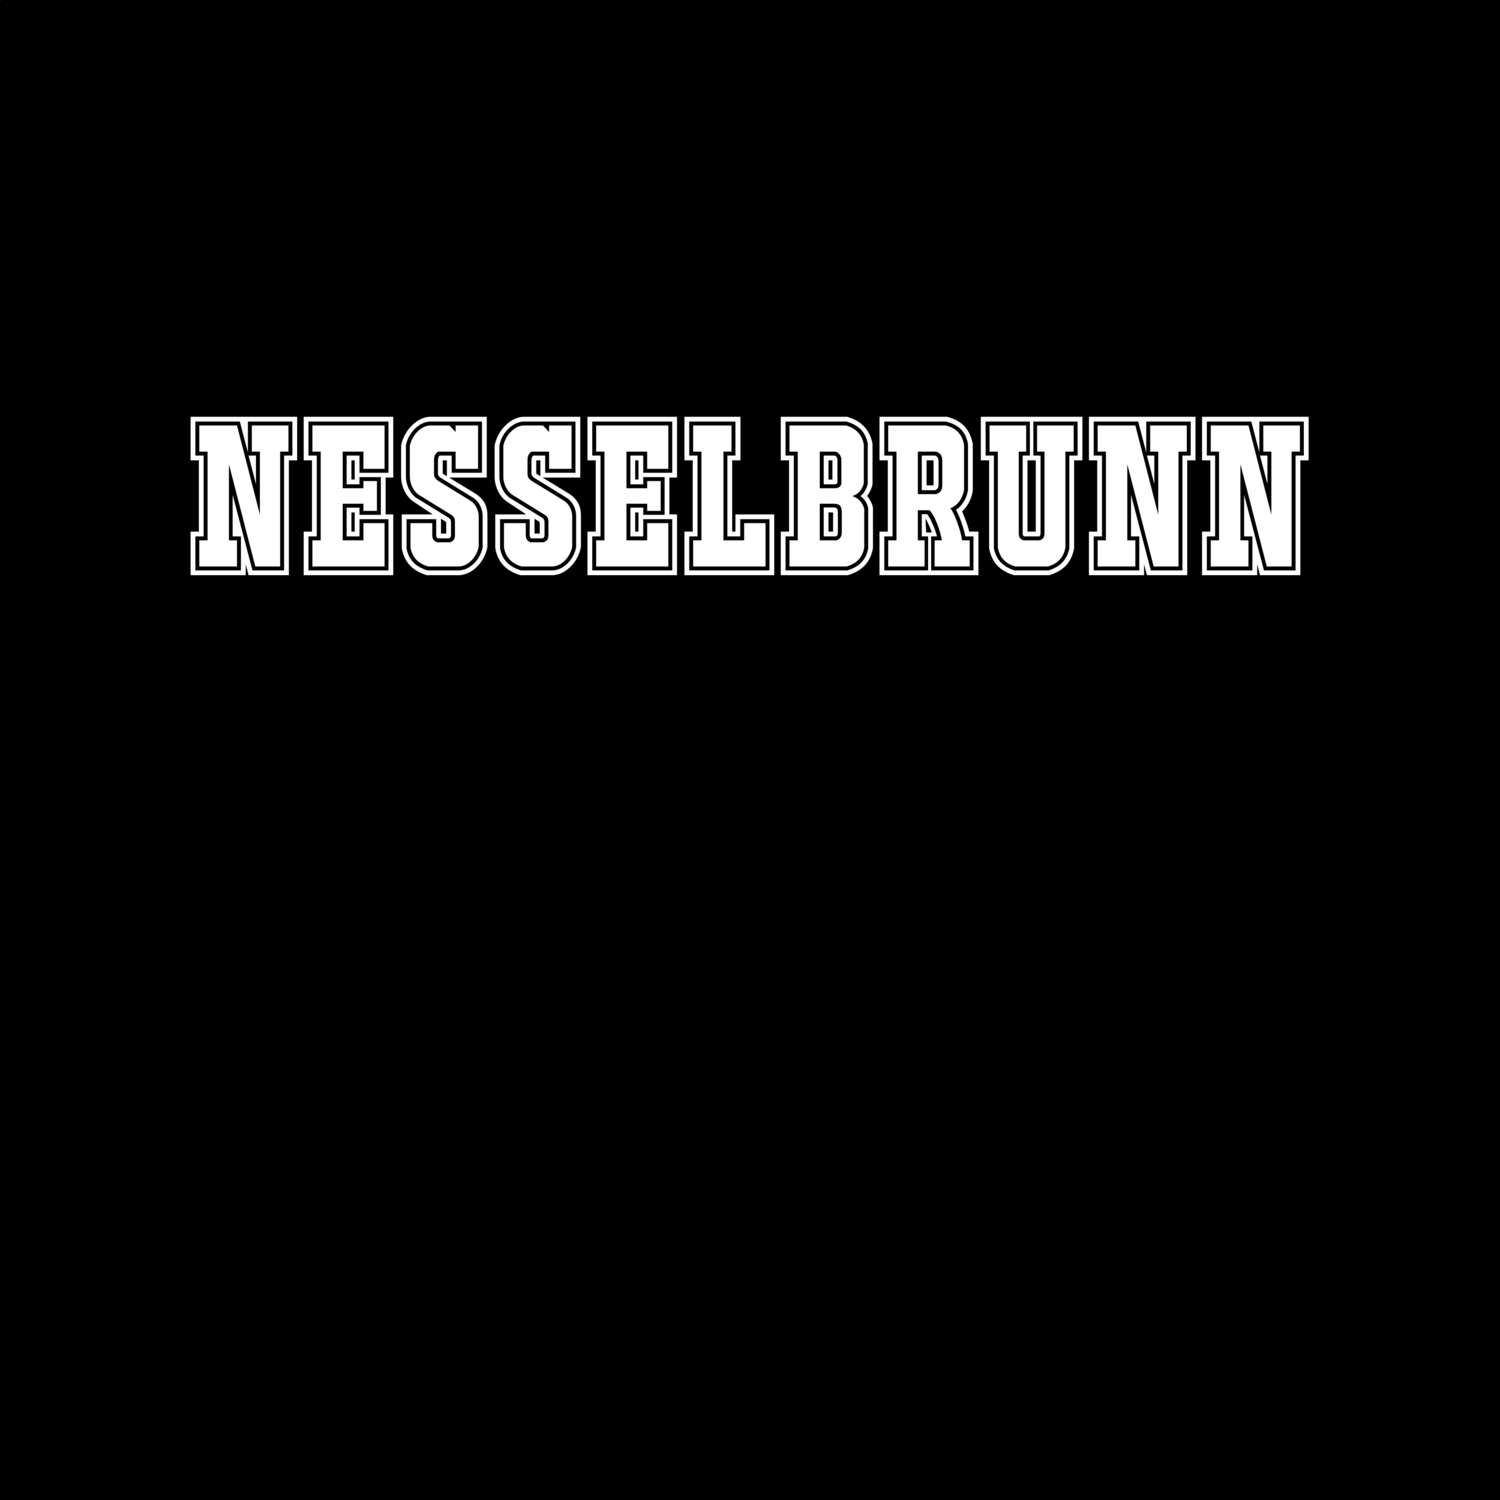 Nesselbrunn T-Shirt »Classic«